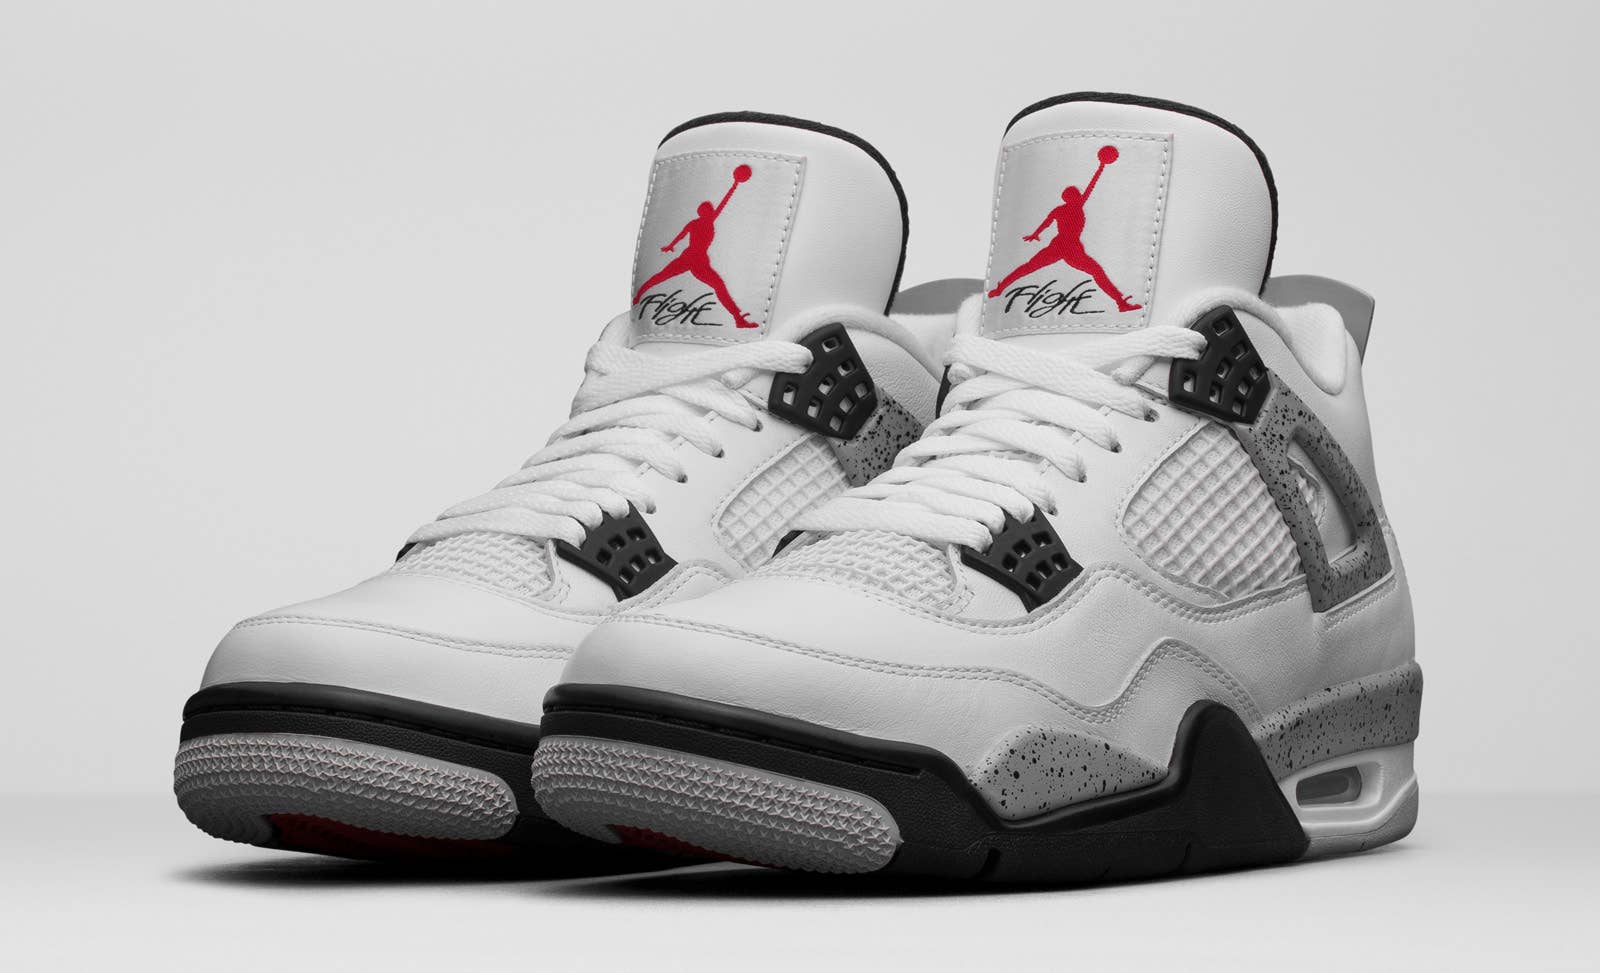 Jordan 4 White Cement 2016